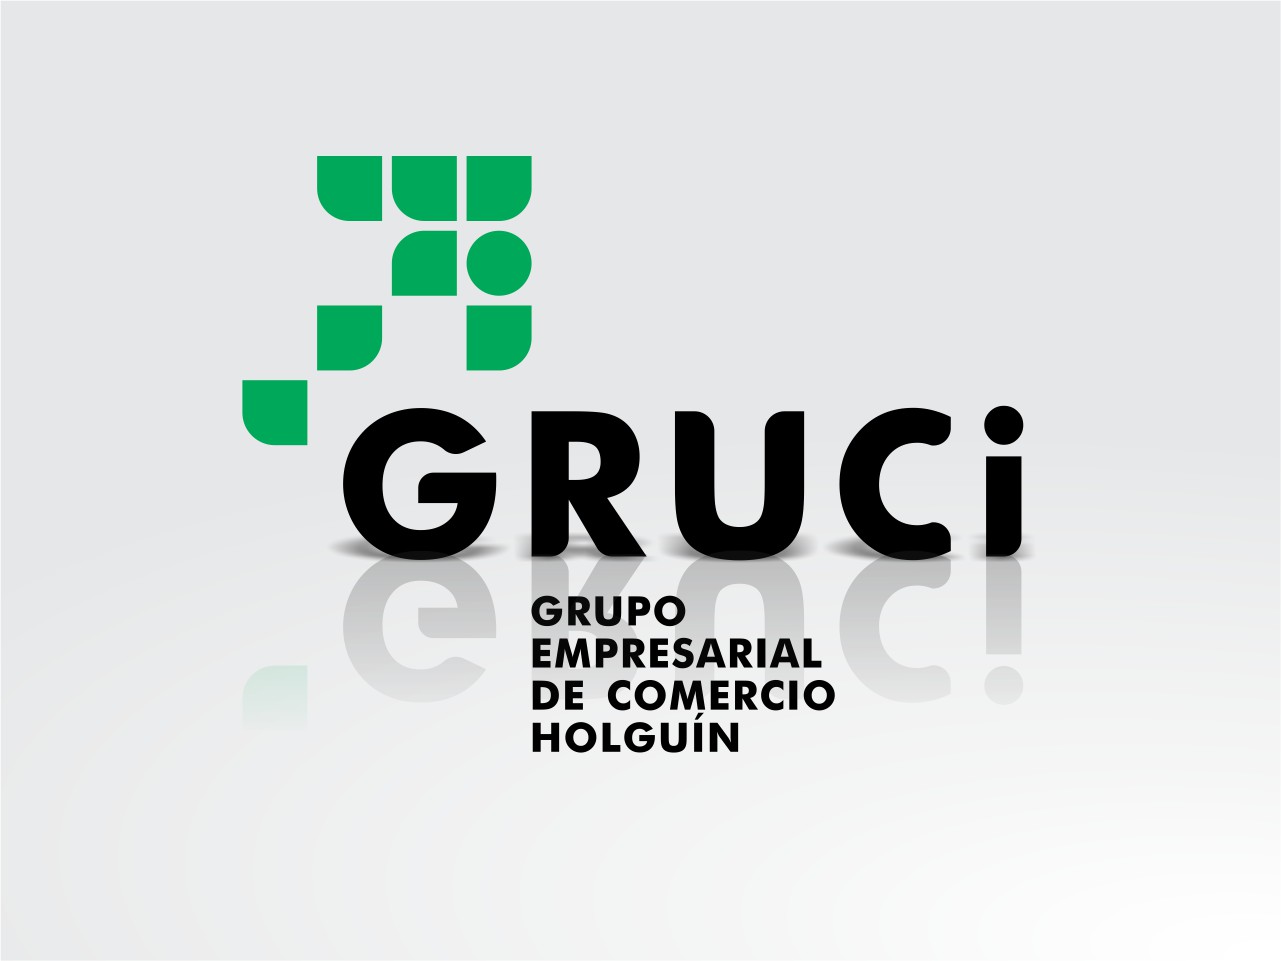 Grupo Empresarial de Comercio Holguín